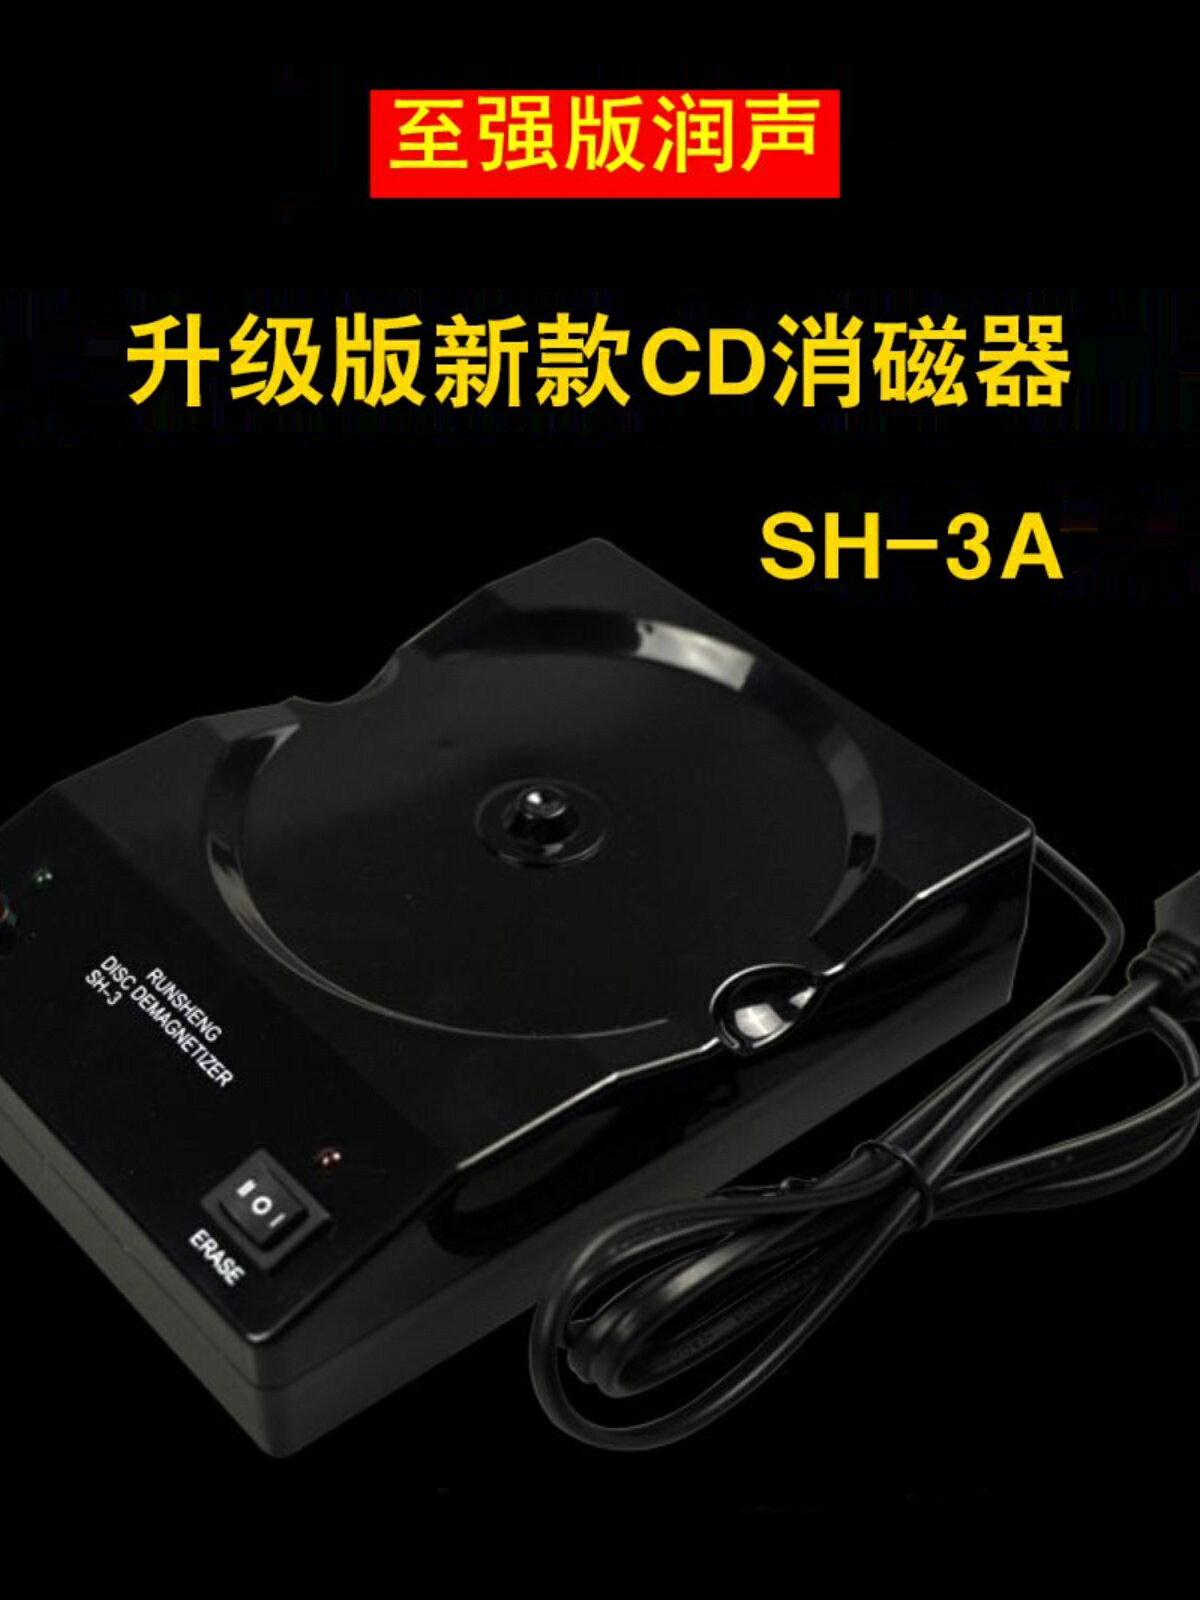 至強升級版 潤聲/SH-3 CD/DVD/VCD消磁器 消磁膽管線材藍光退磁